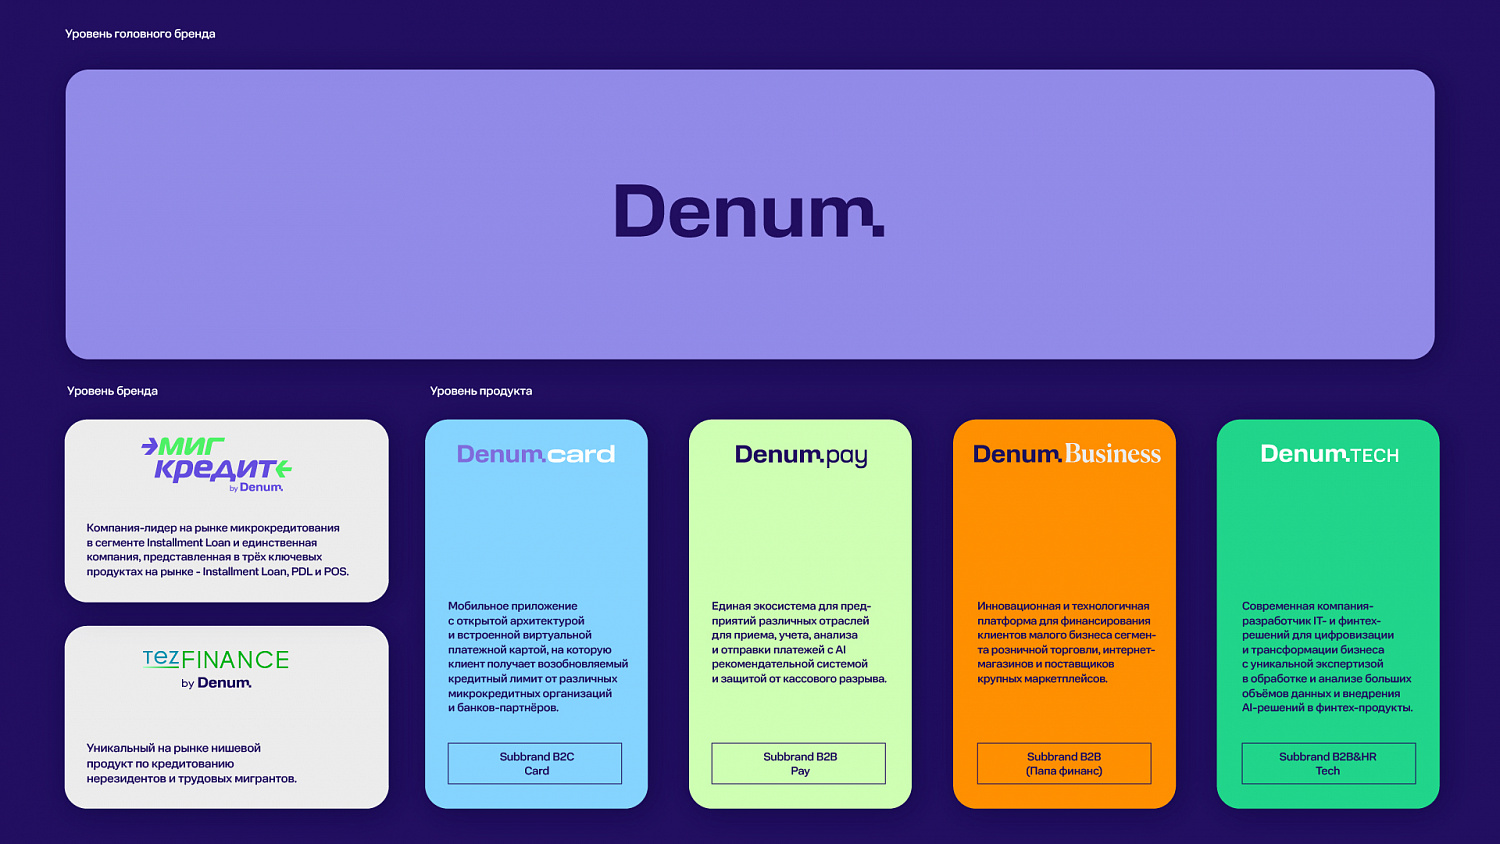 Denum: Создание финтех бренда - Портфолио Depot